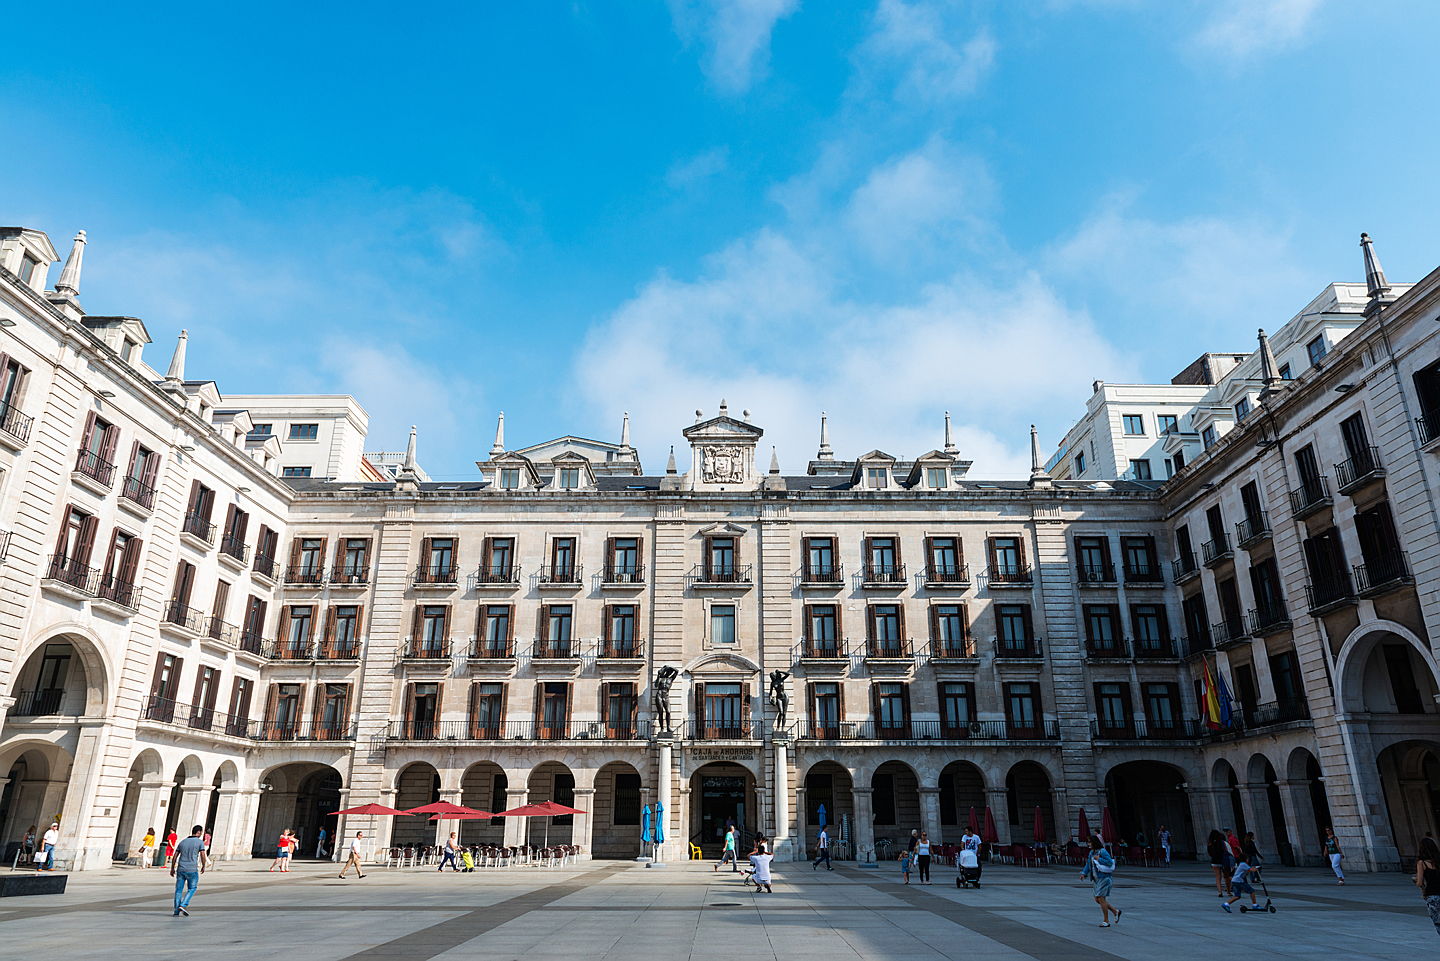  Santander, España
- El mercado inmobiliario de Santander